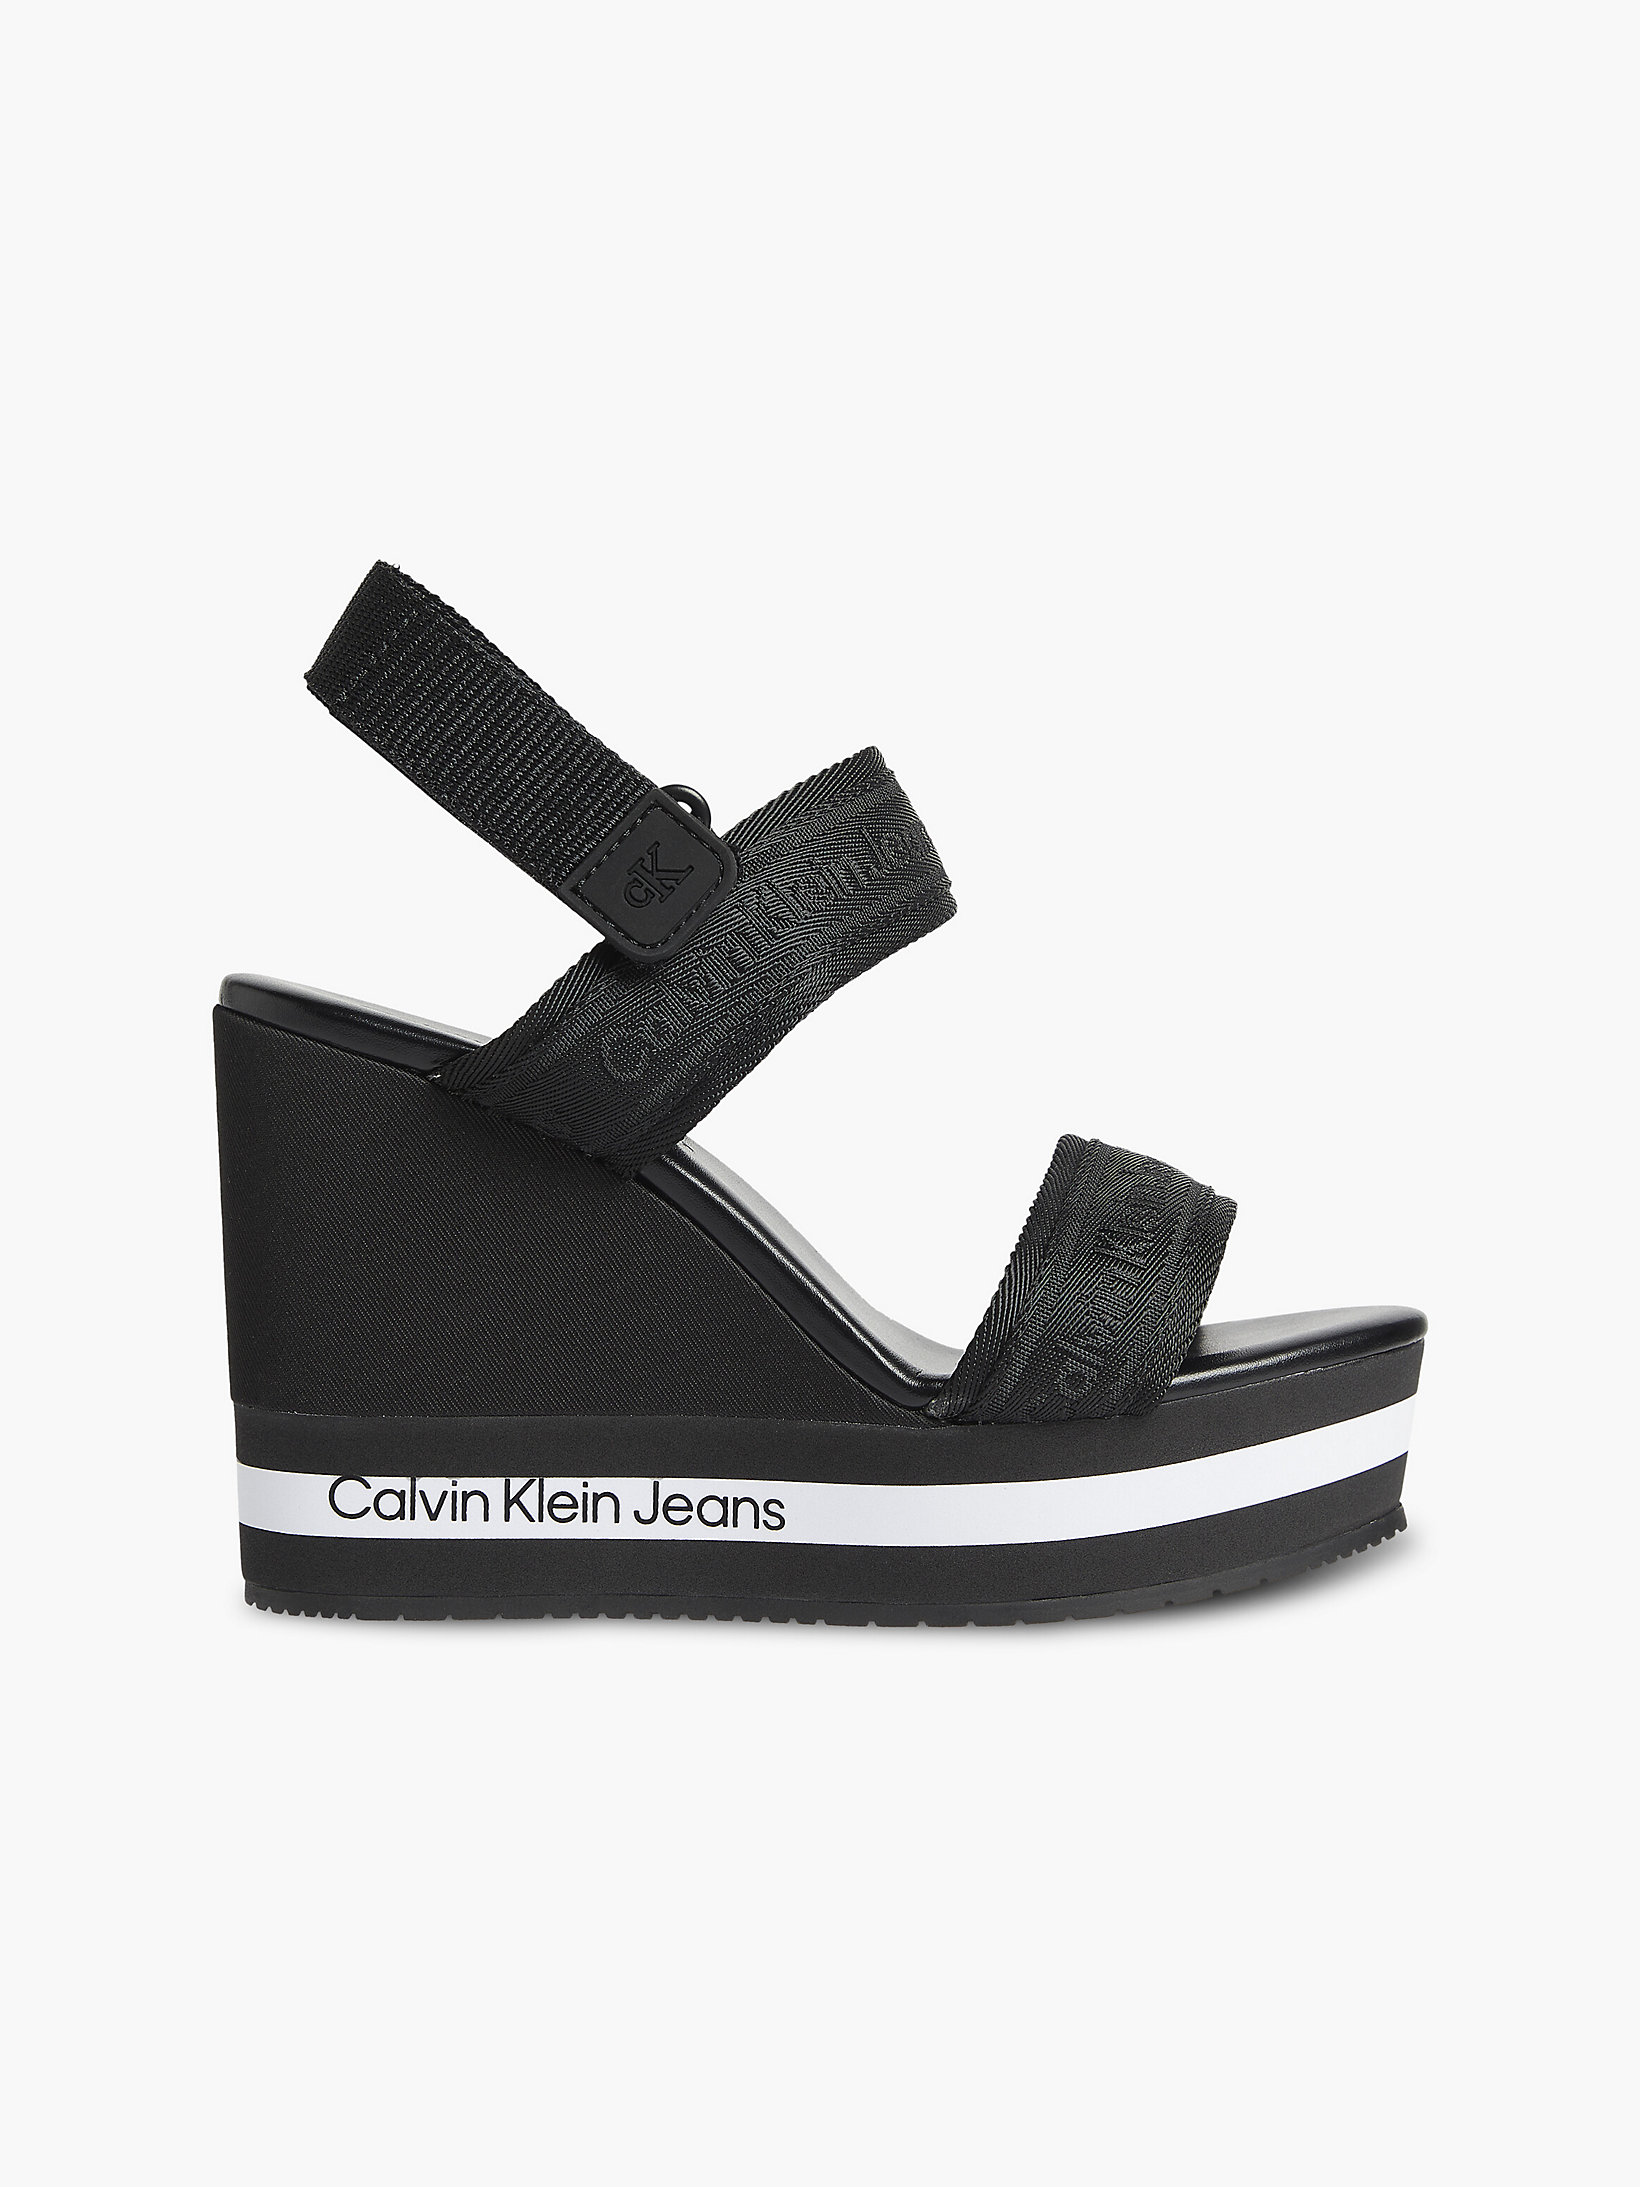 Black Recycled Platform Wedge Sandals undefined women Calvin Klein